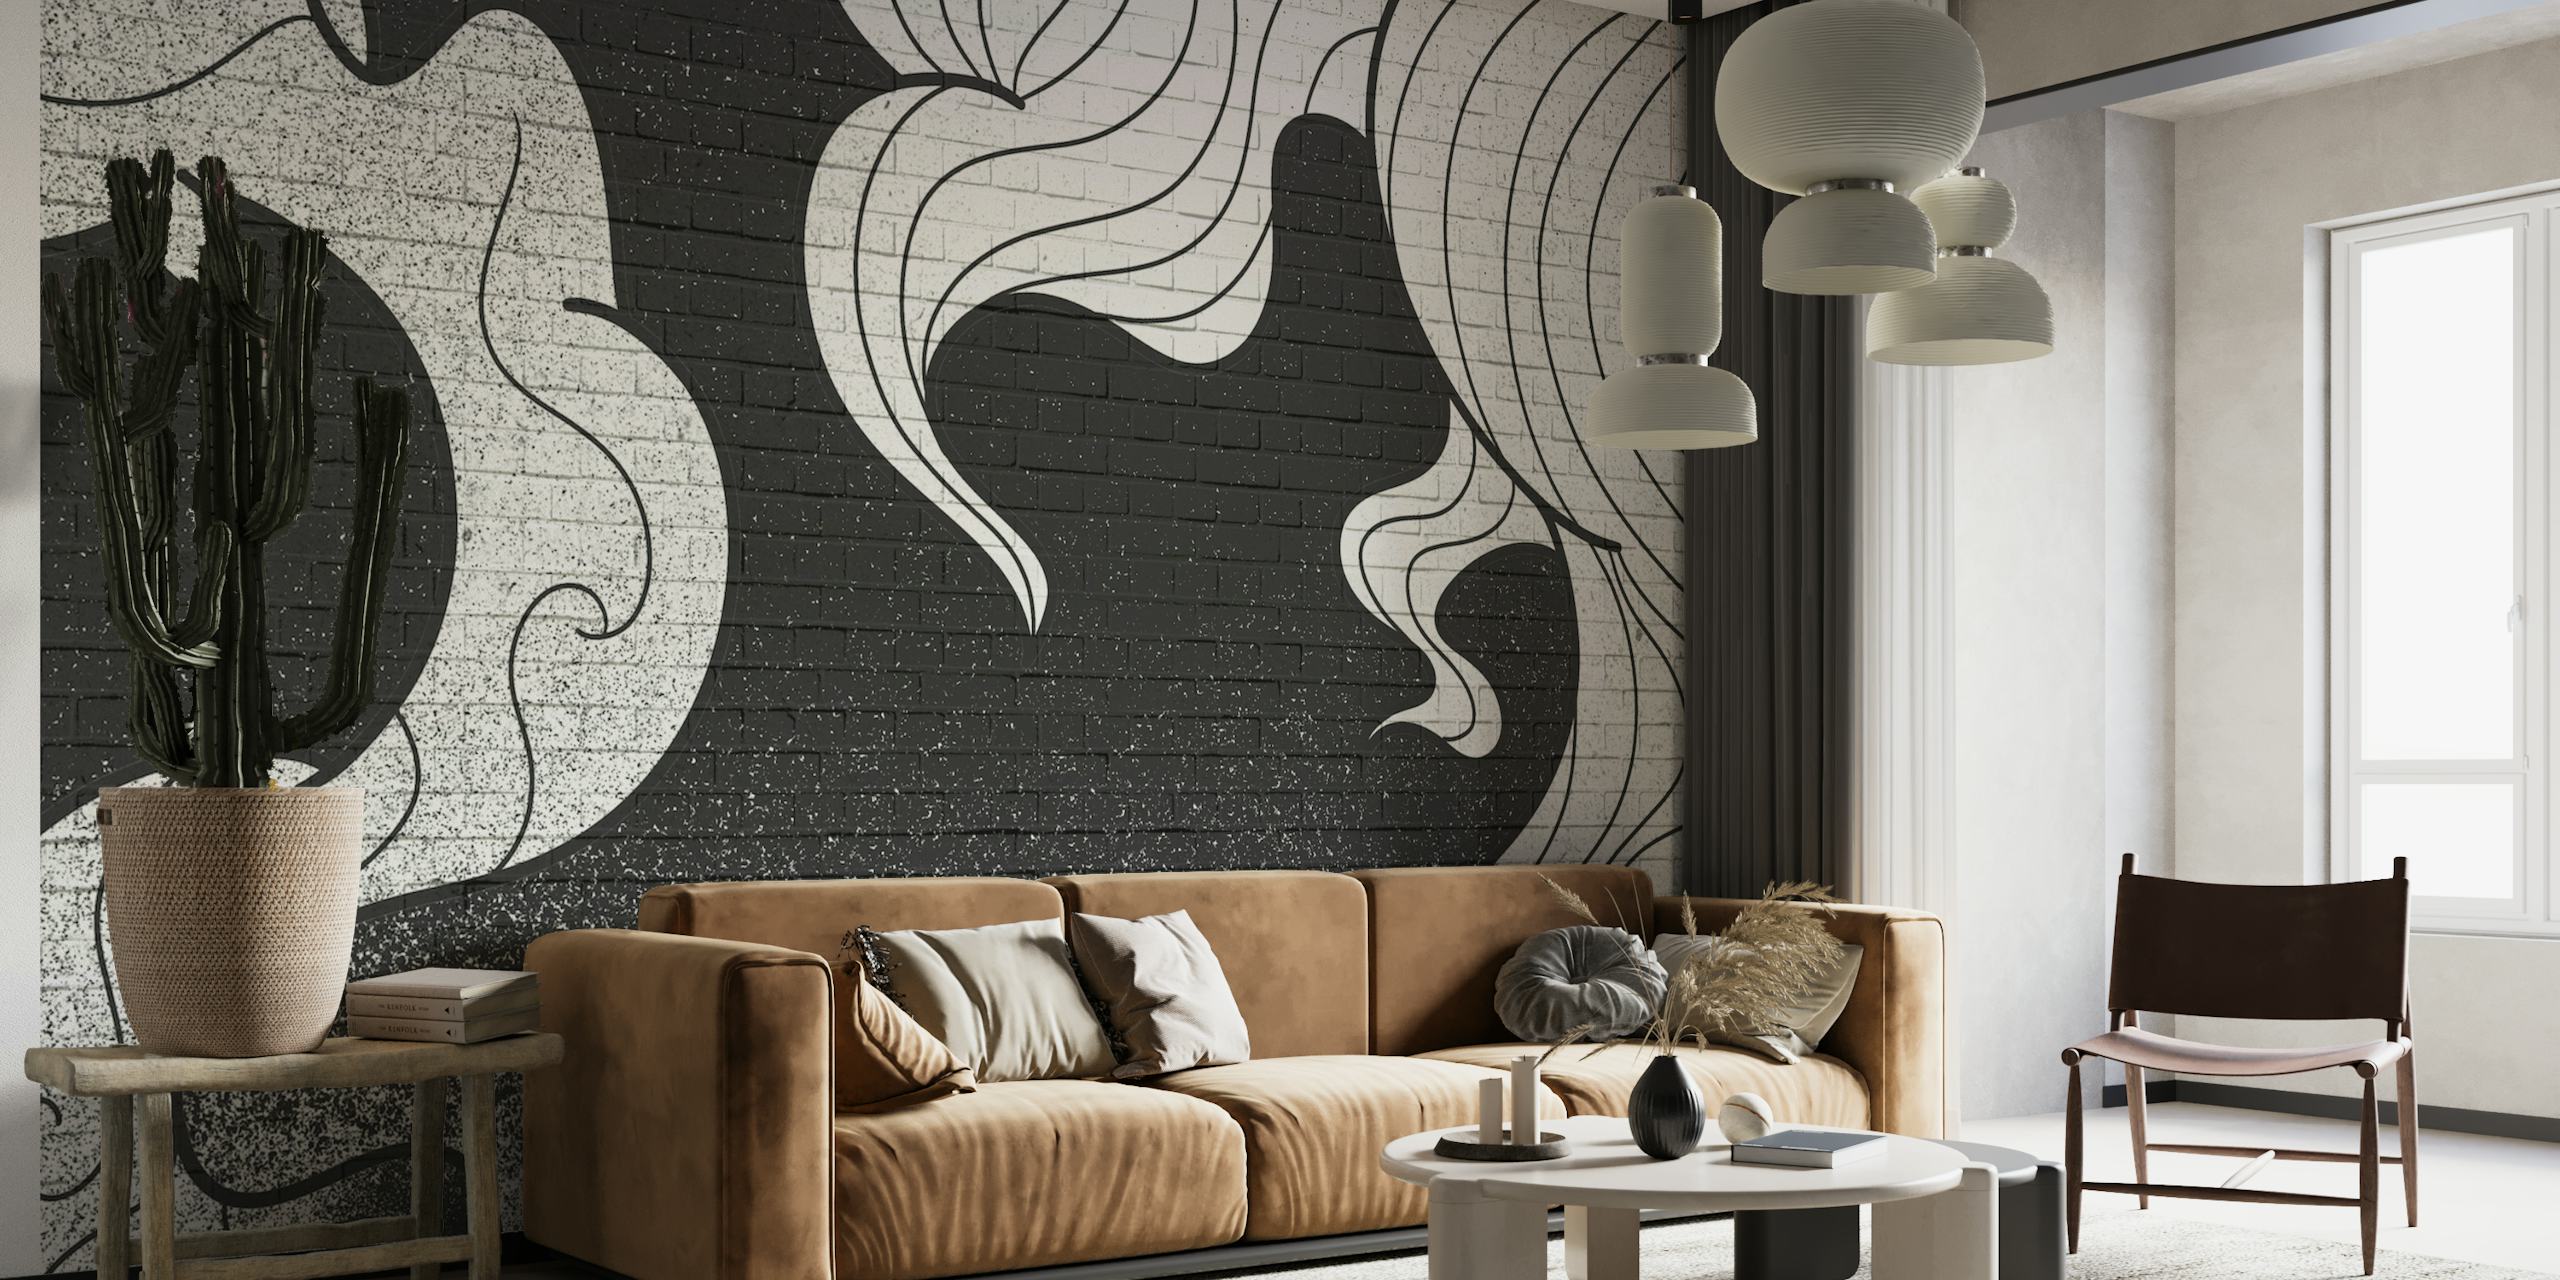 Monochrome smoke graffiti pattern wall mural for contemporary decor